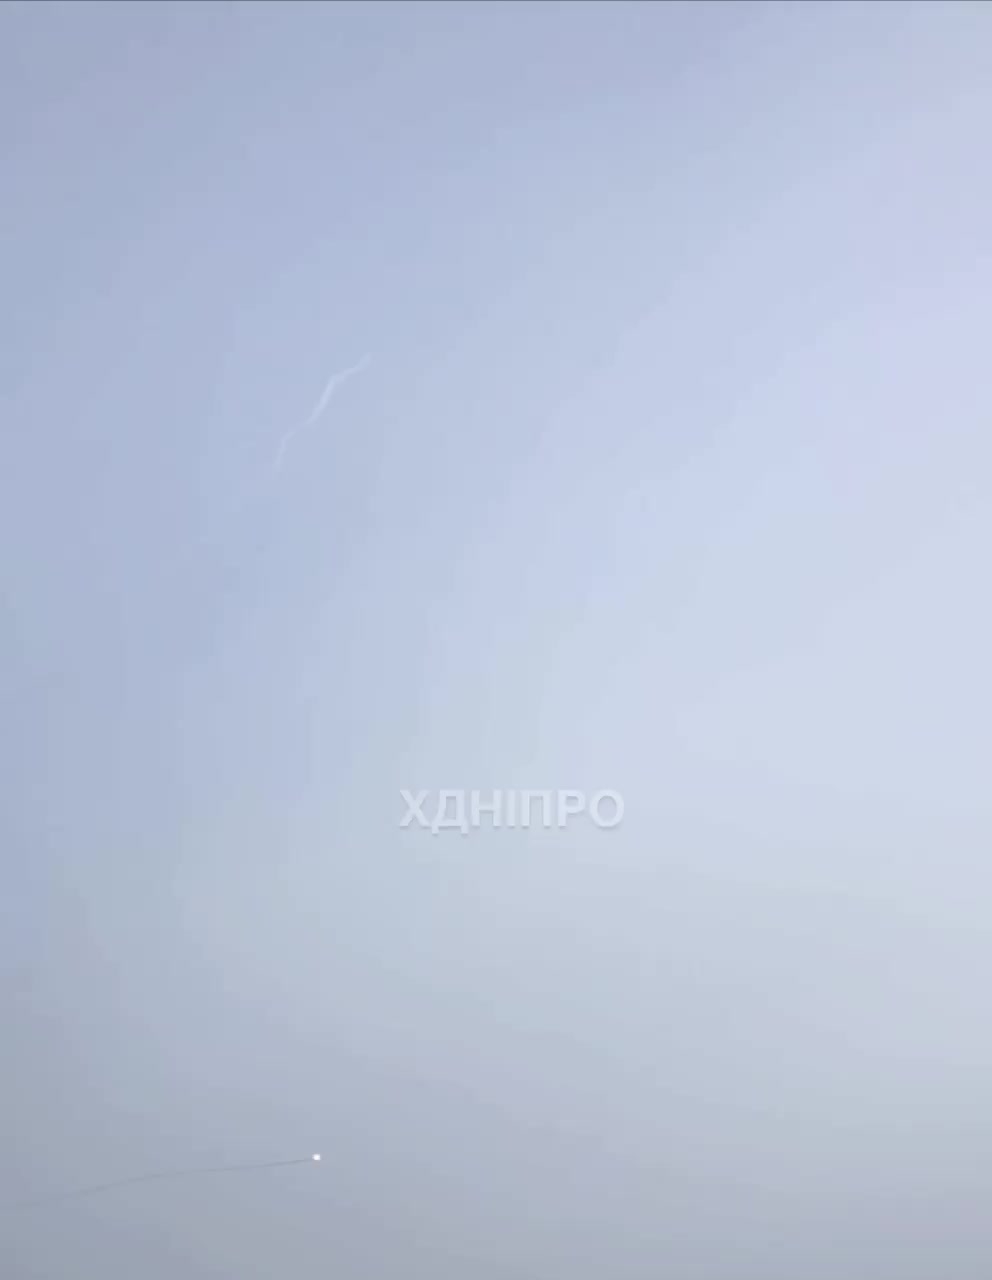 La defensa aèria va enderrocar un míssil sobre la ciutat de Dnipro